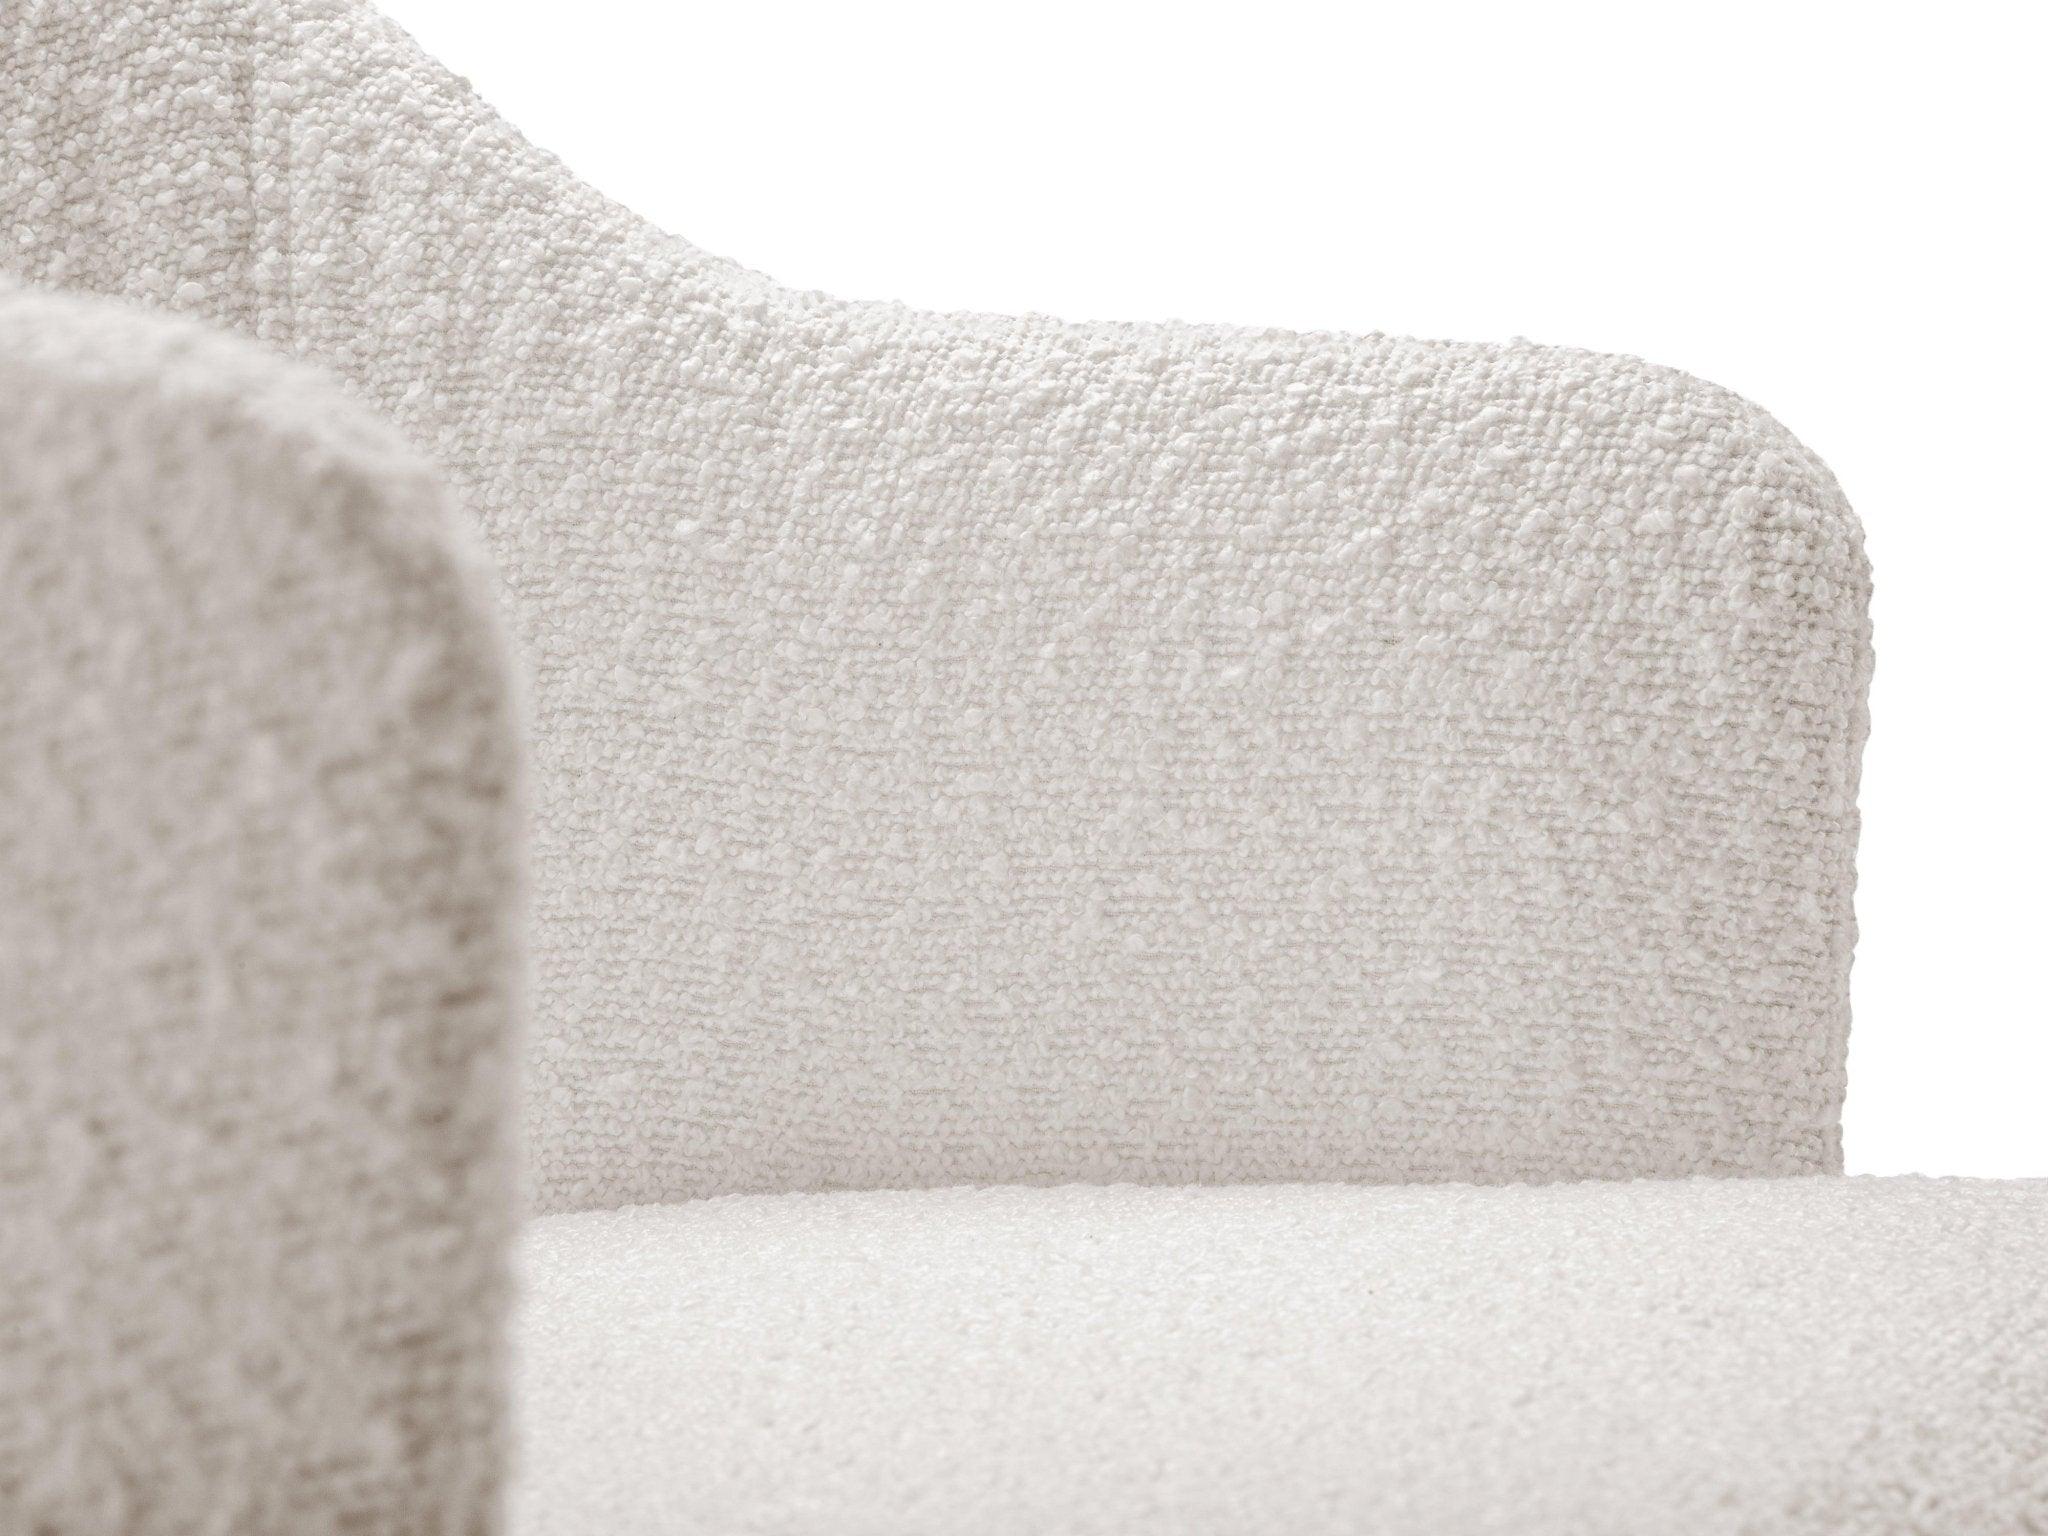 Krzesło w tkaninie boucle LYS jasnobeżowy CXL by Christian Lacroix    Eye on Design